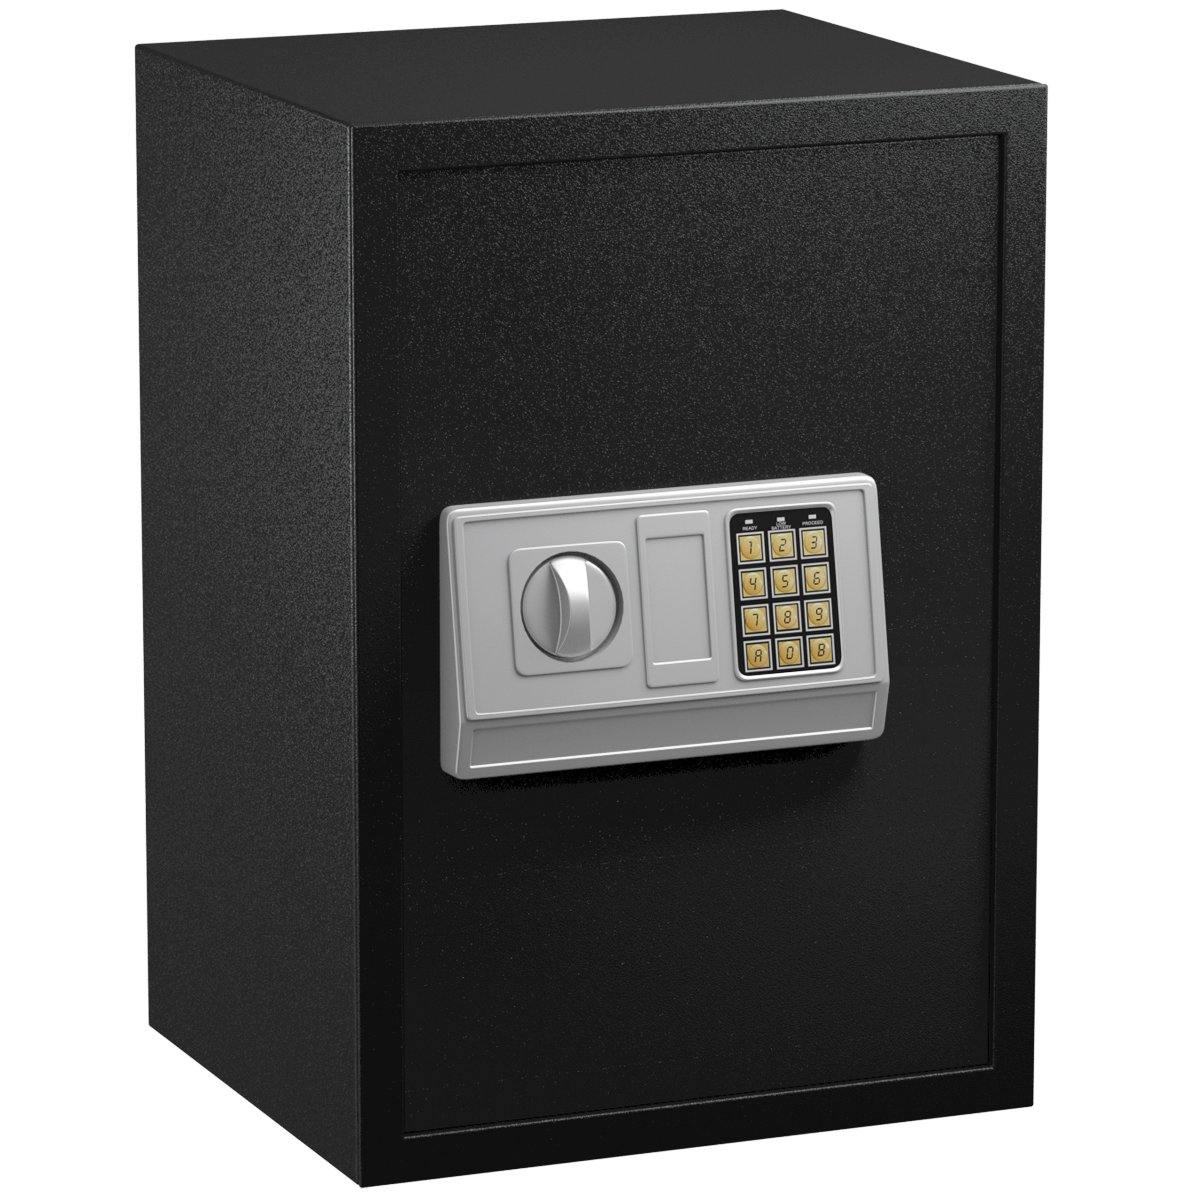 Large Digital Electronic Safe Box Keypad Lock Security - Giantexus